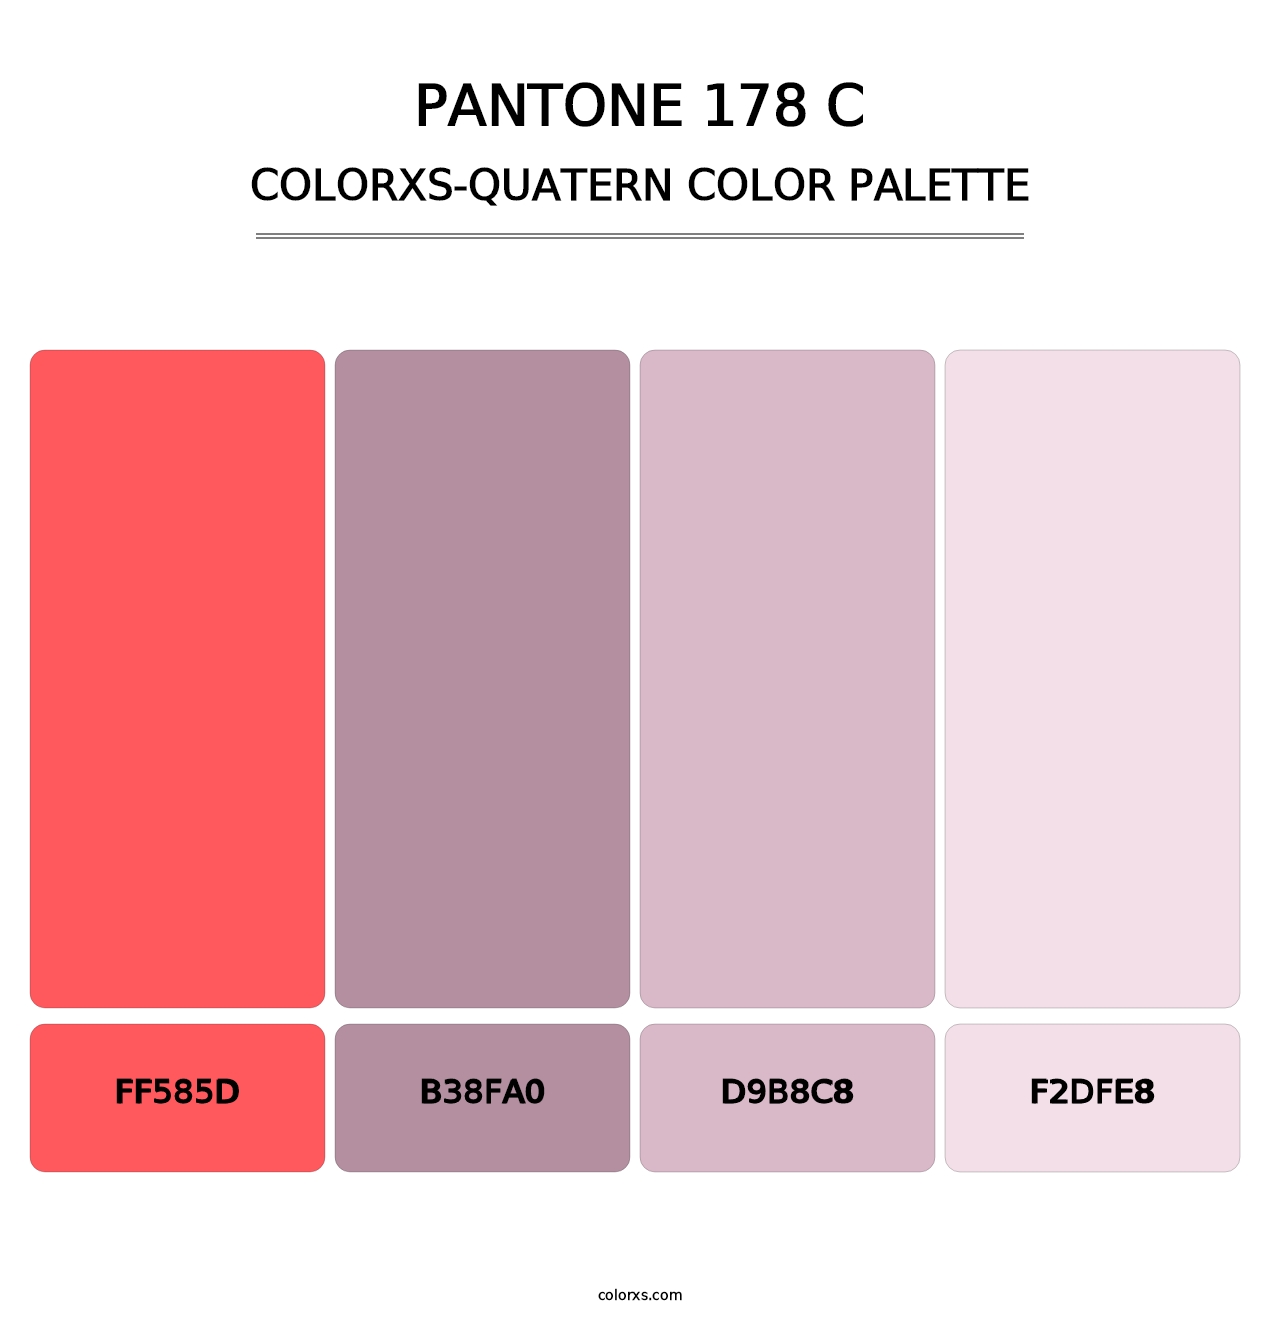 PANTONE 178 C - Colorxs Quatern Palette